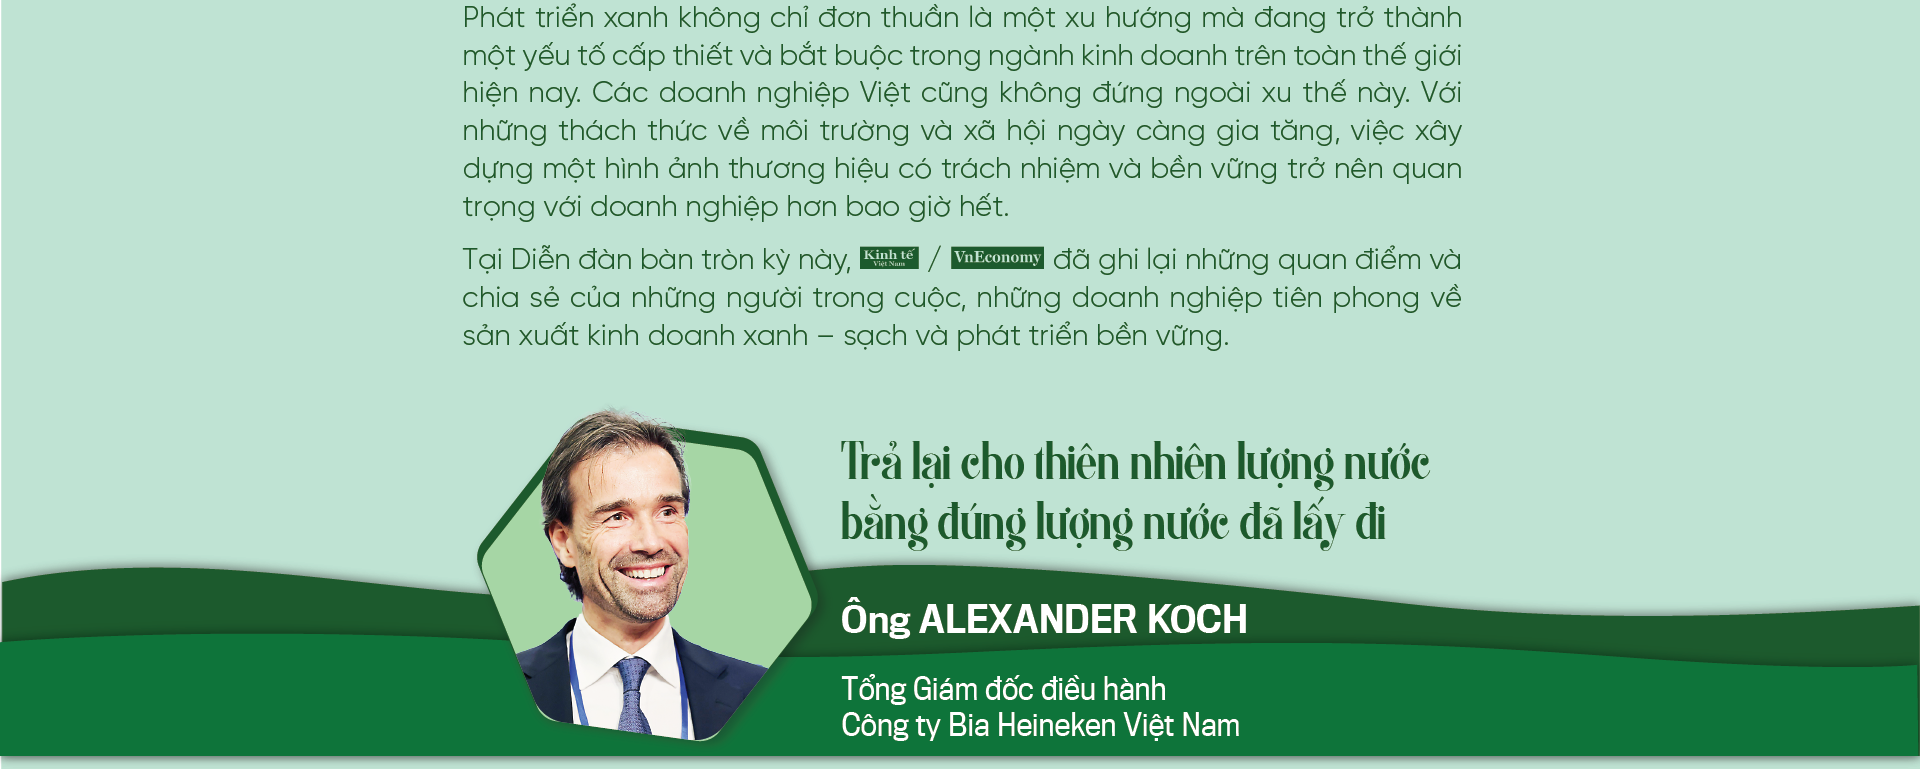 Phát triển xanh: Tăng giá trị thương hiệu cho doanh nghiệp Việt - Ảnh 2